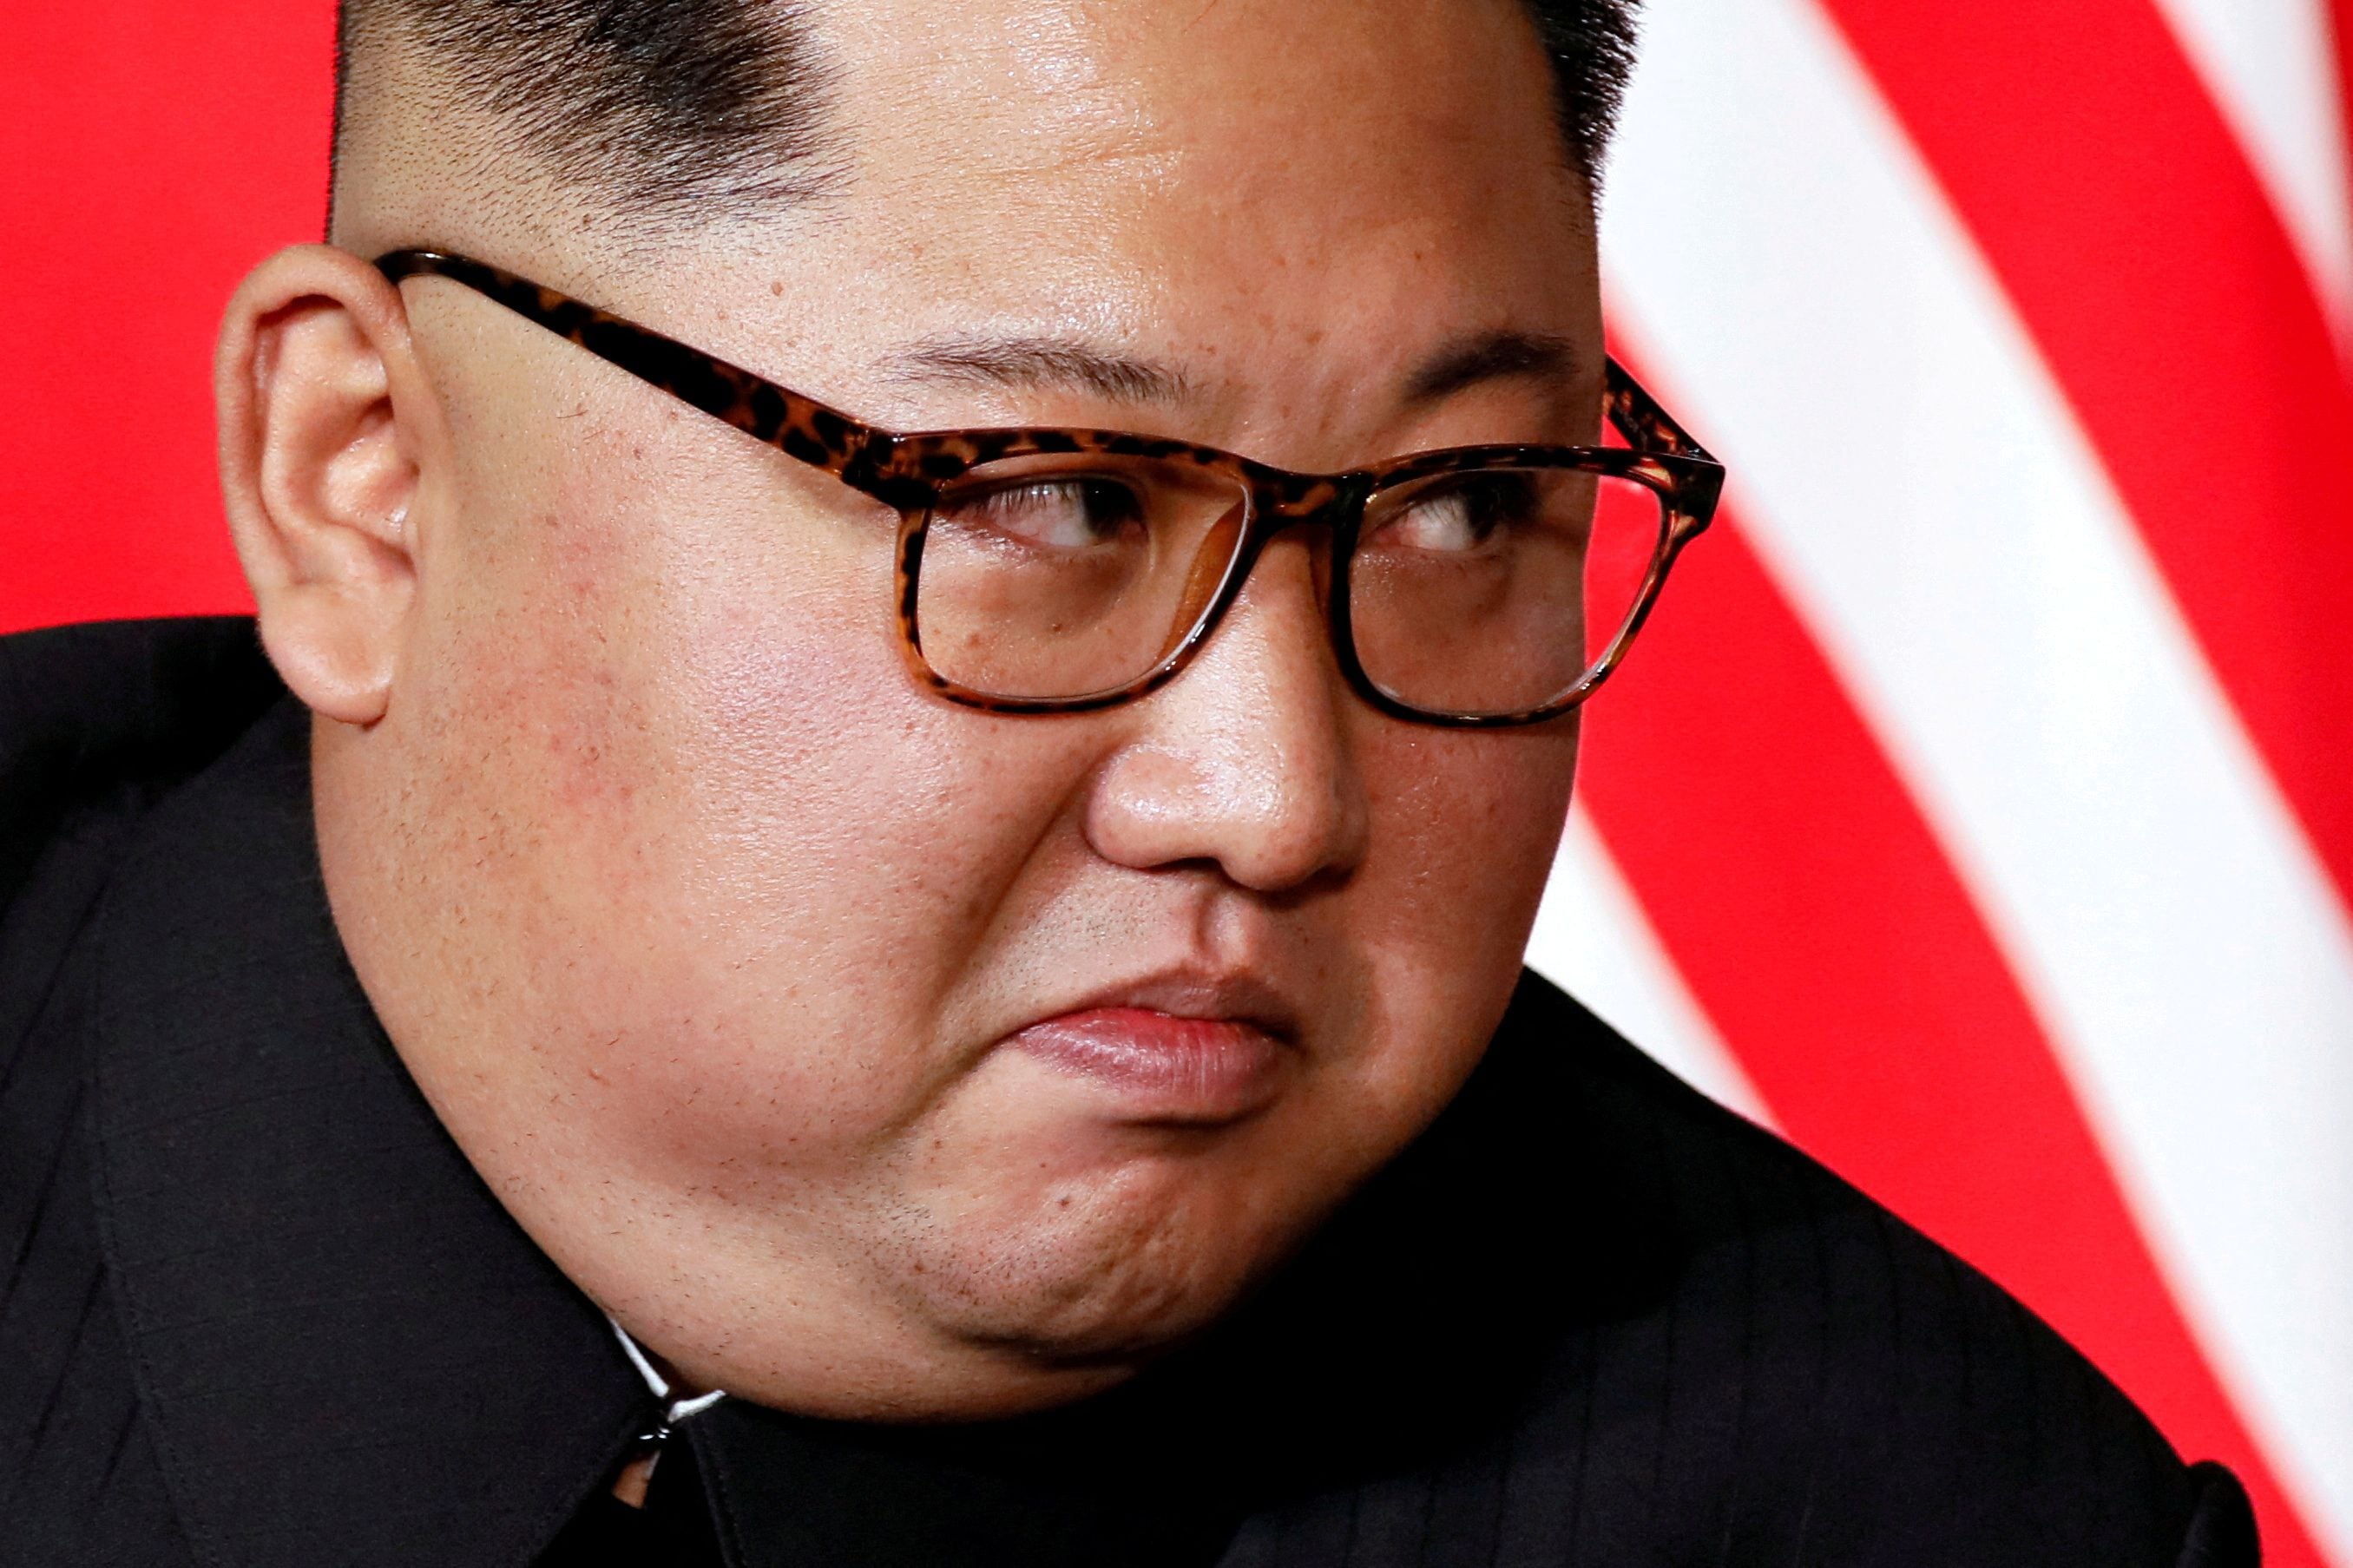 En caso de que King se presente ante el régimen como un desertor legítimo, igual quedará en los deseos de Kim Jong-un aceptarlo en el país (REUTERS)